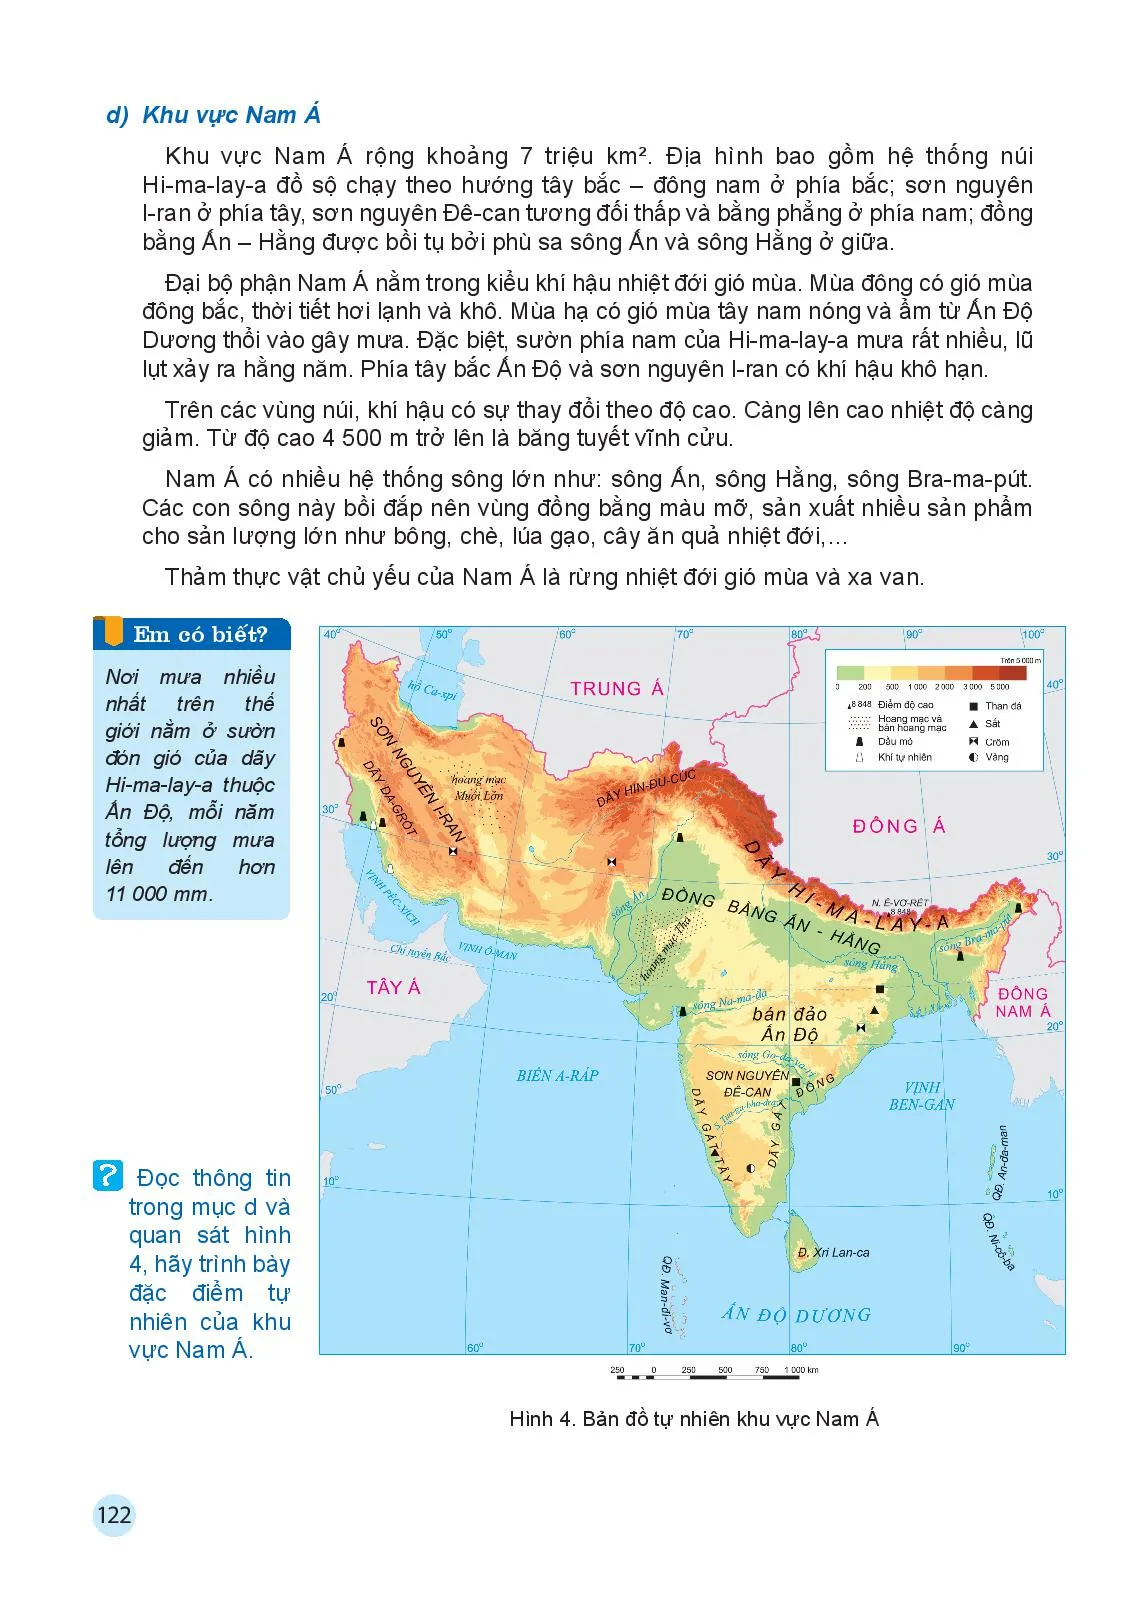 Bài 7 Bản đồ chính trị châu Á, các khu vực của châu Á